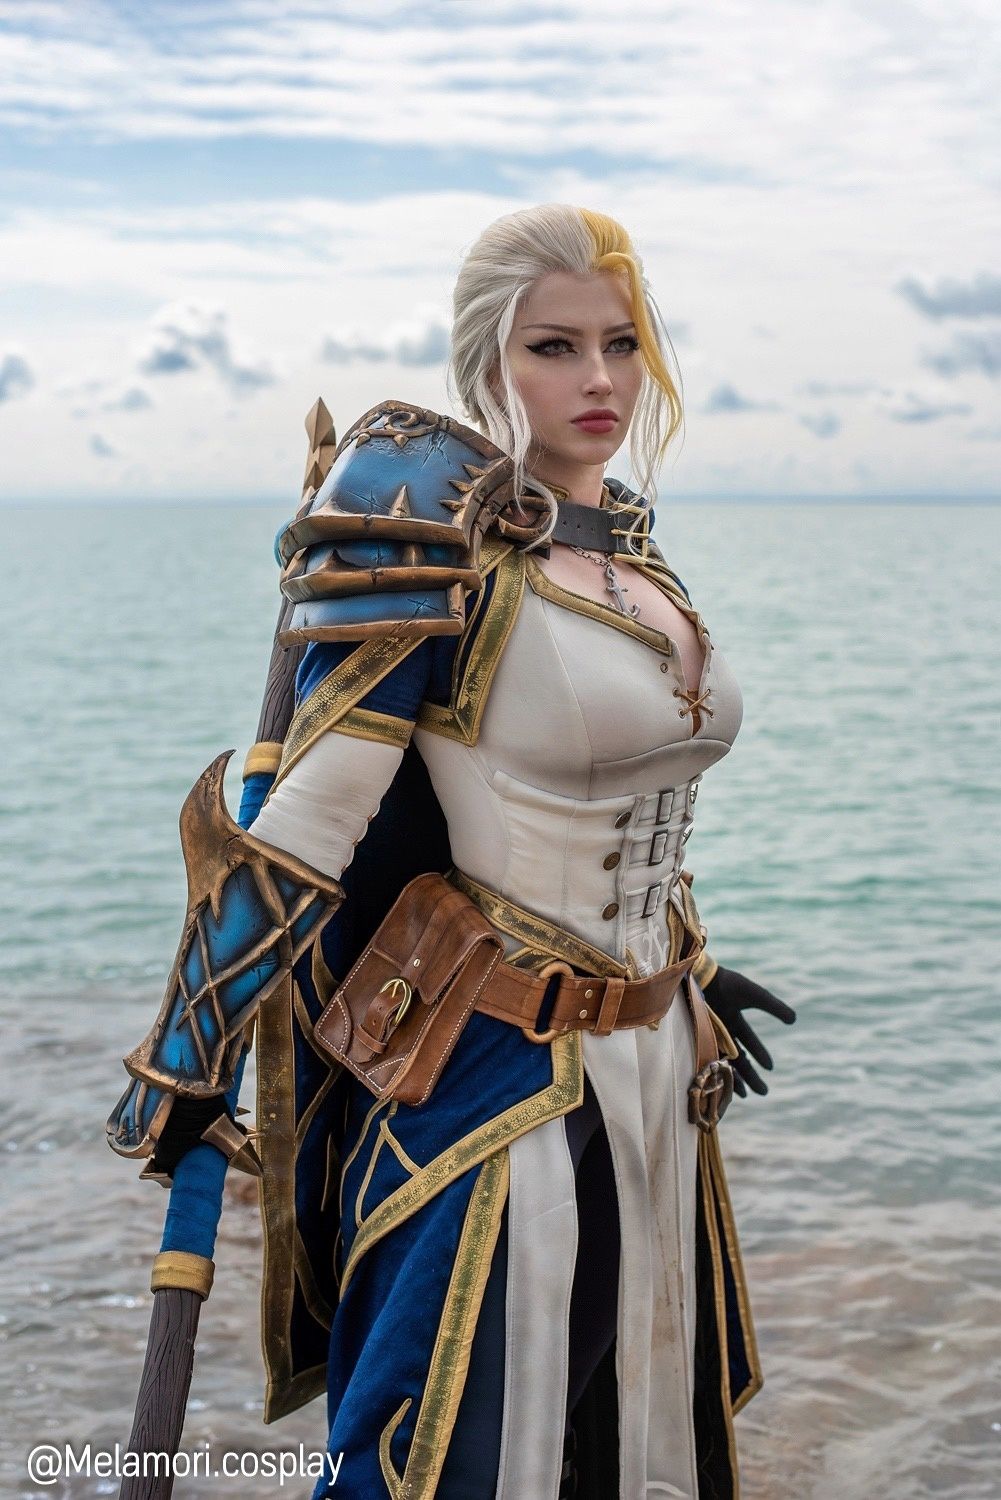 Косплей на Джайну Праудмур из World of Warcraft. Косплеер: Lady Melamori. Источник: vk.com/melamoricosplay